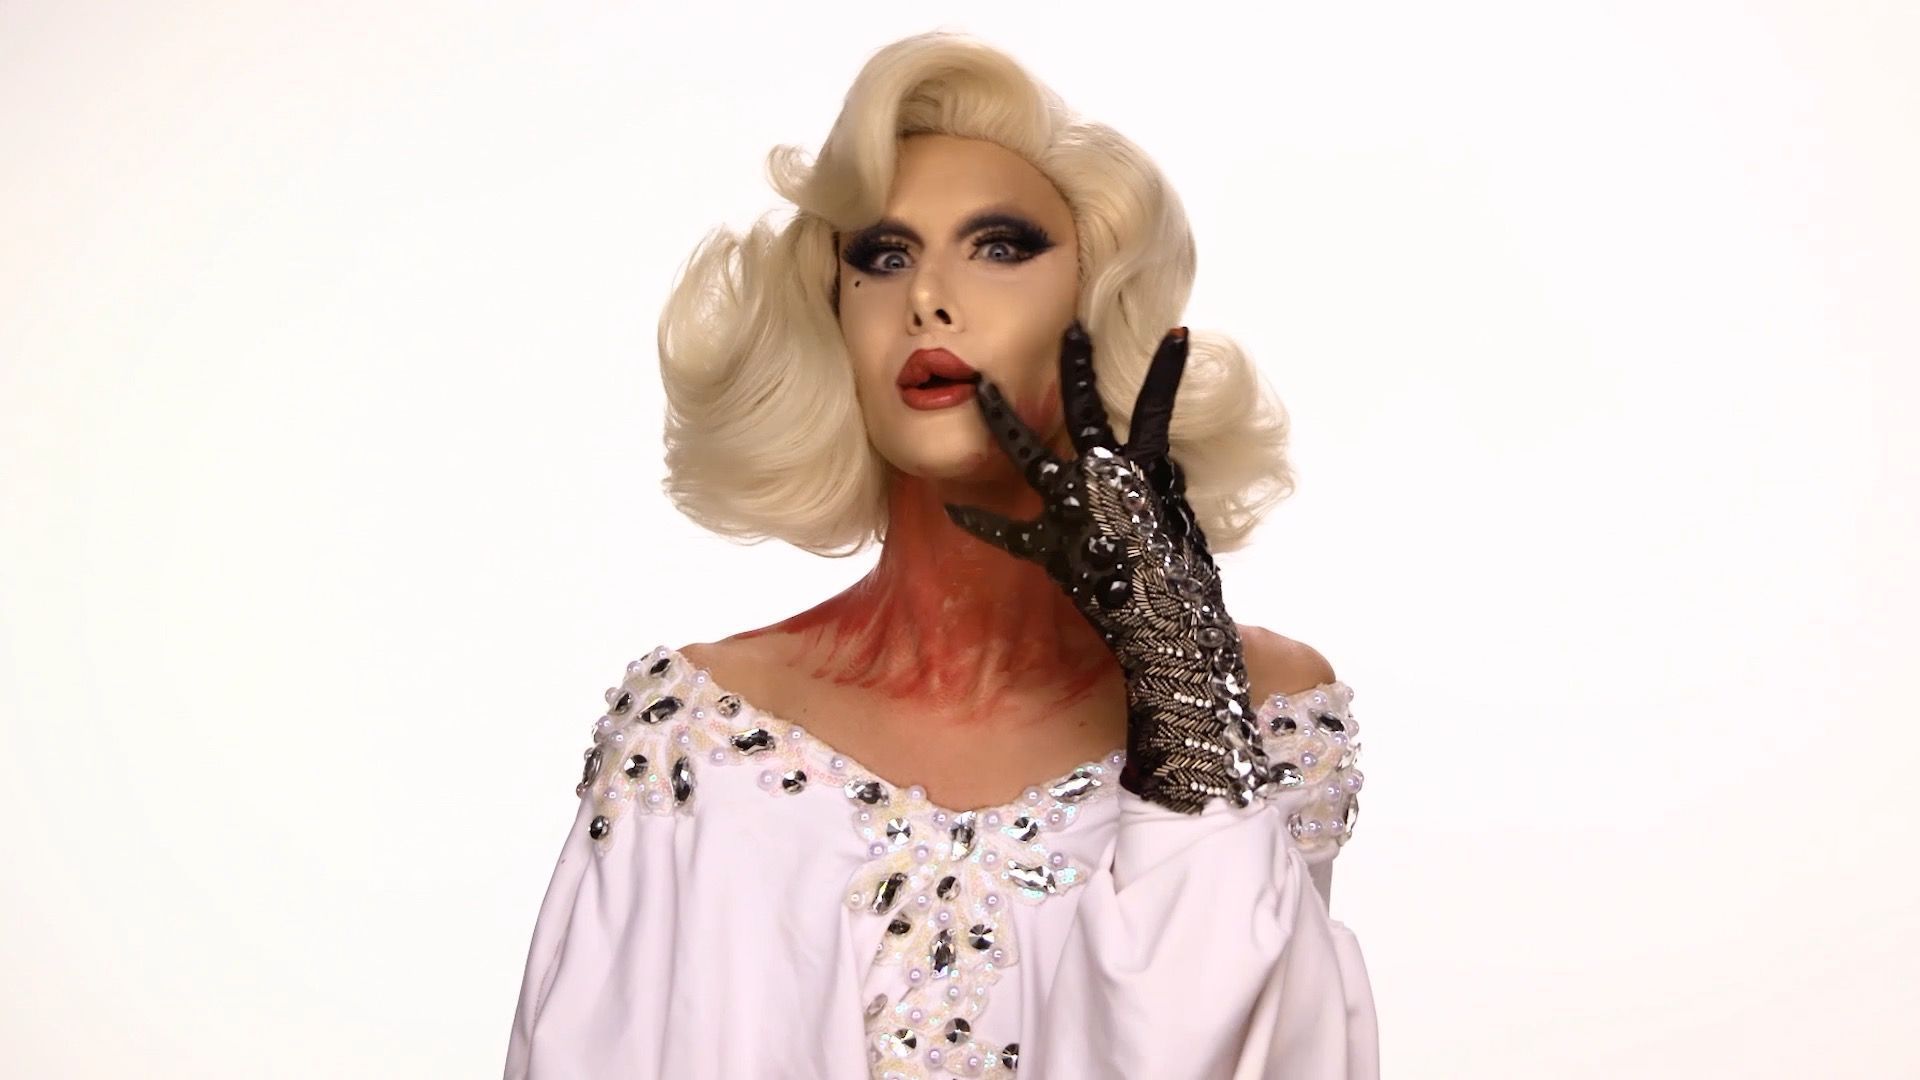 Le défi de Nico : se maquiller comme une drag queen tout au long de l’émission (vidéo)